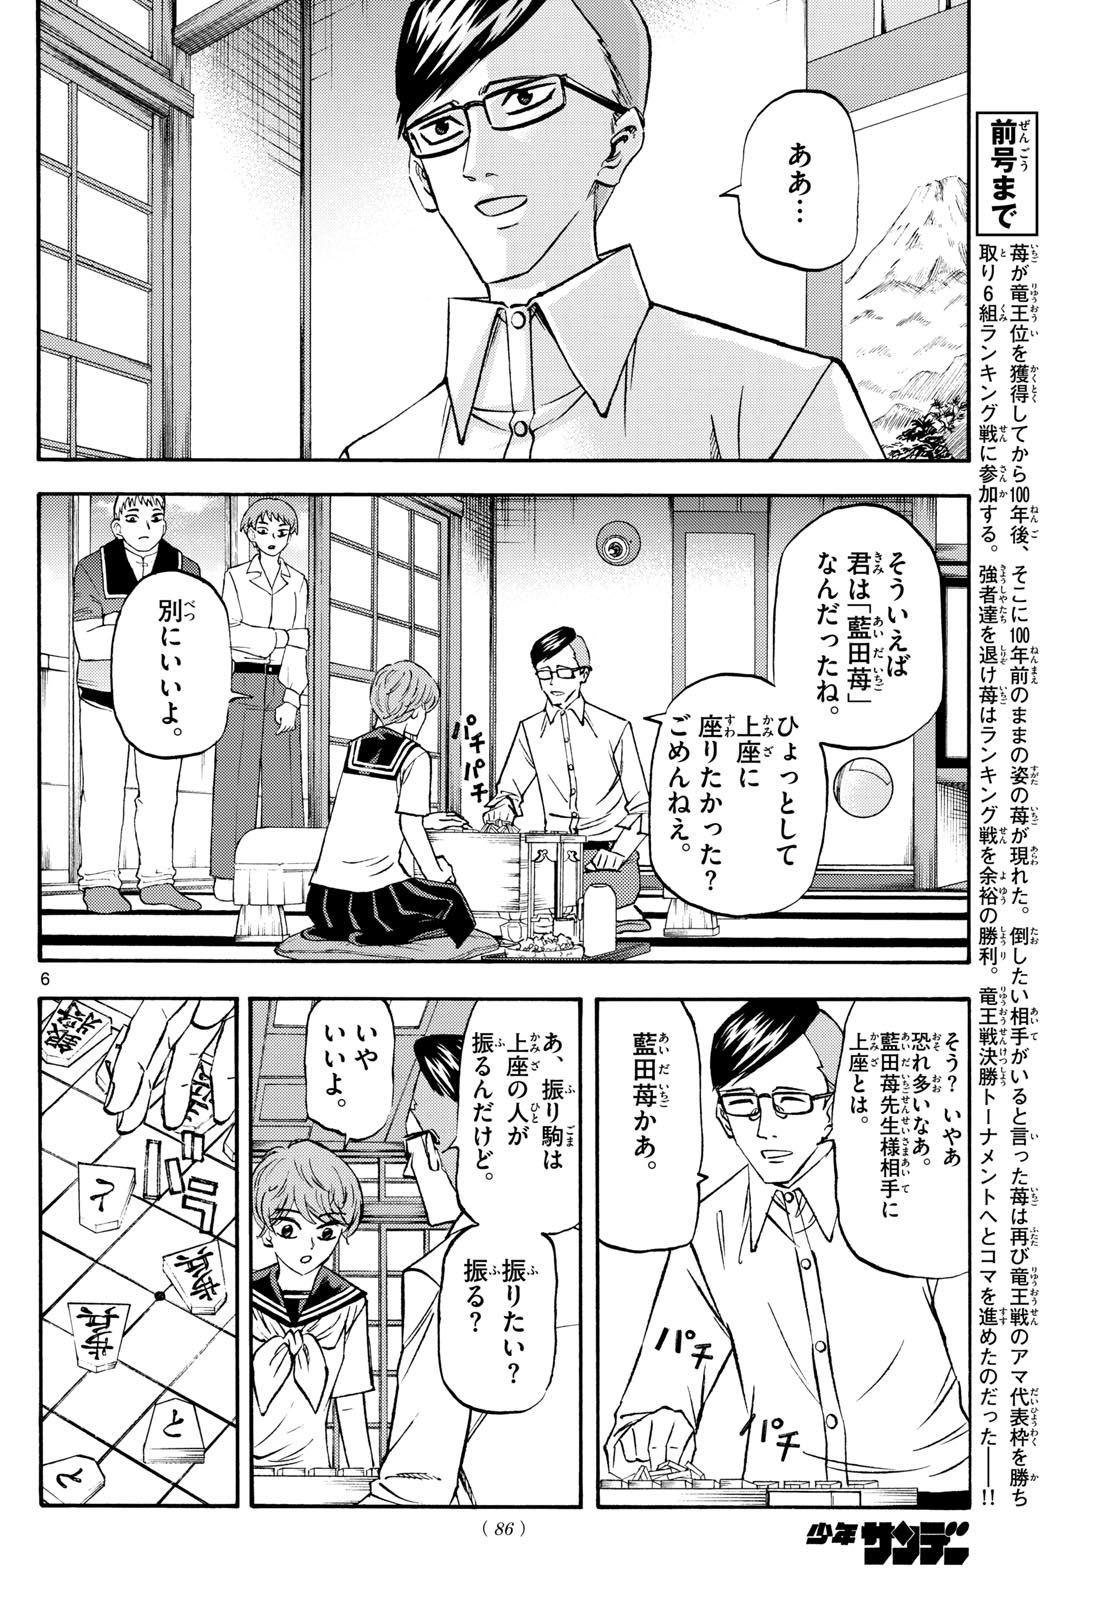 Tatsu to Ichigo - Chapter 196 - Page 6